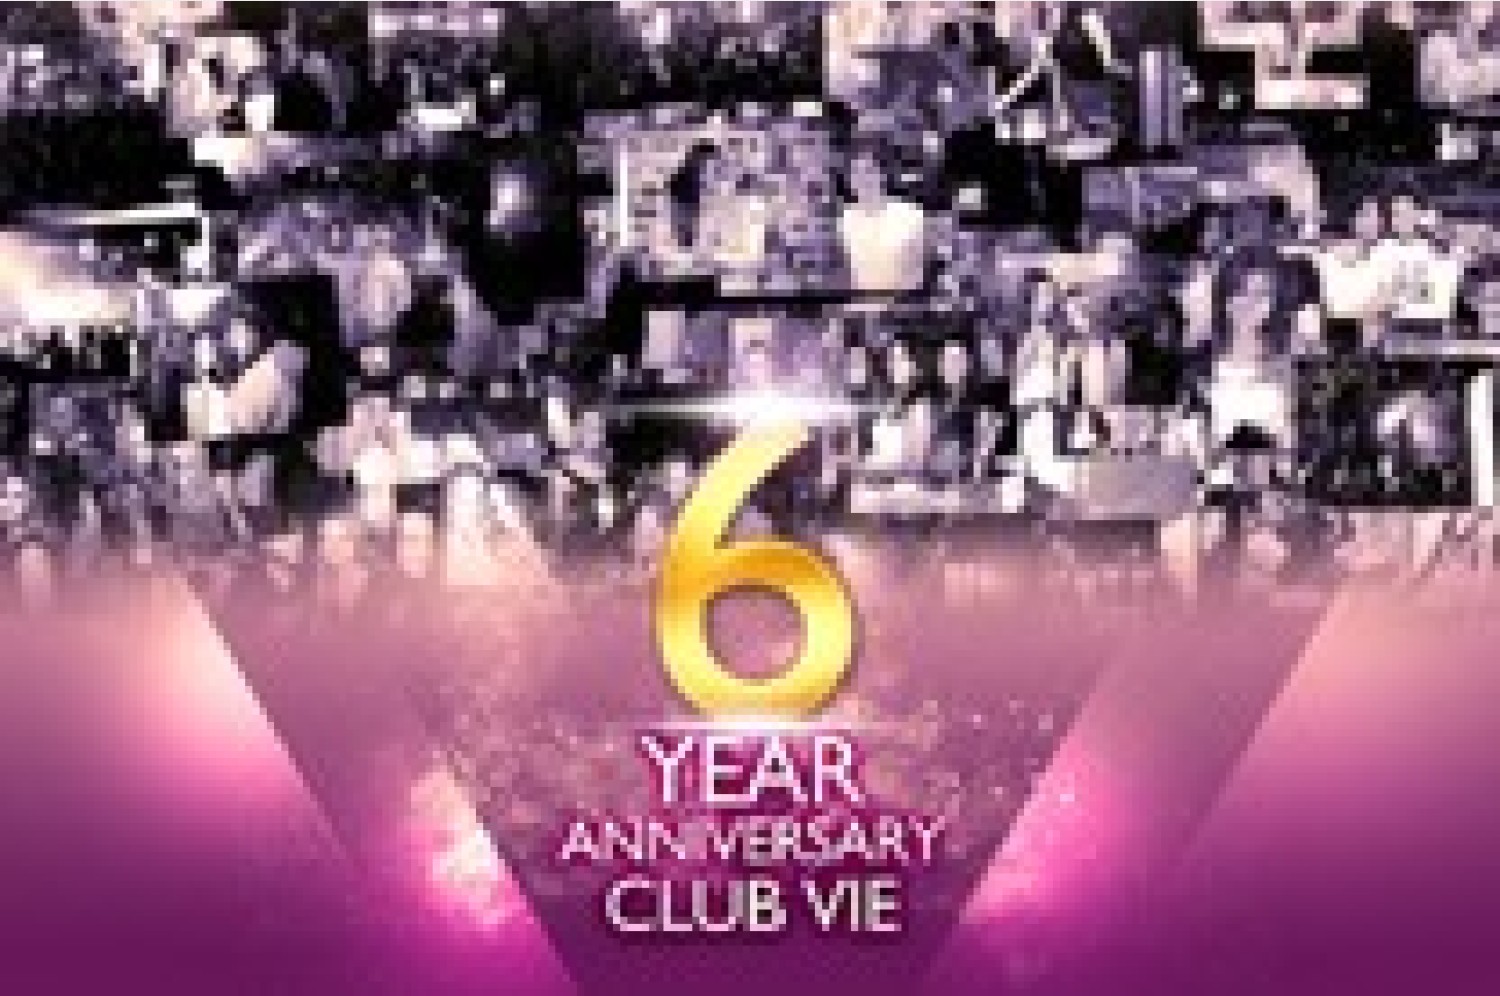 Party nieuws: Deze maand bestaat Club Vie 6 jaar en dat wordt gevierd!